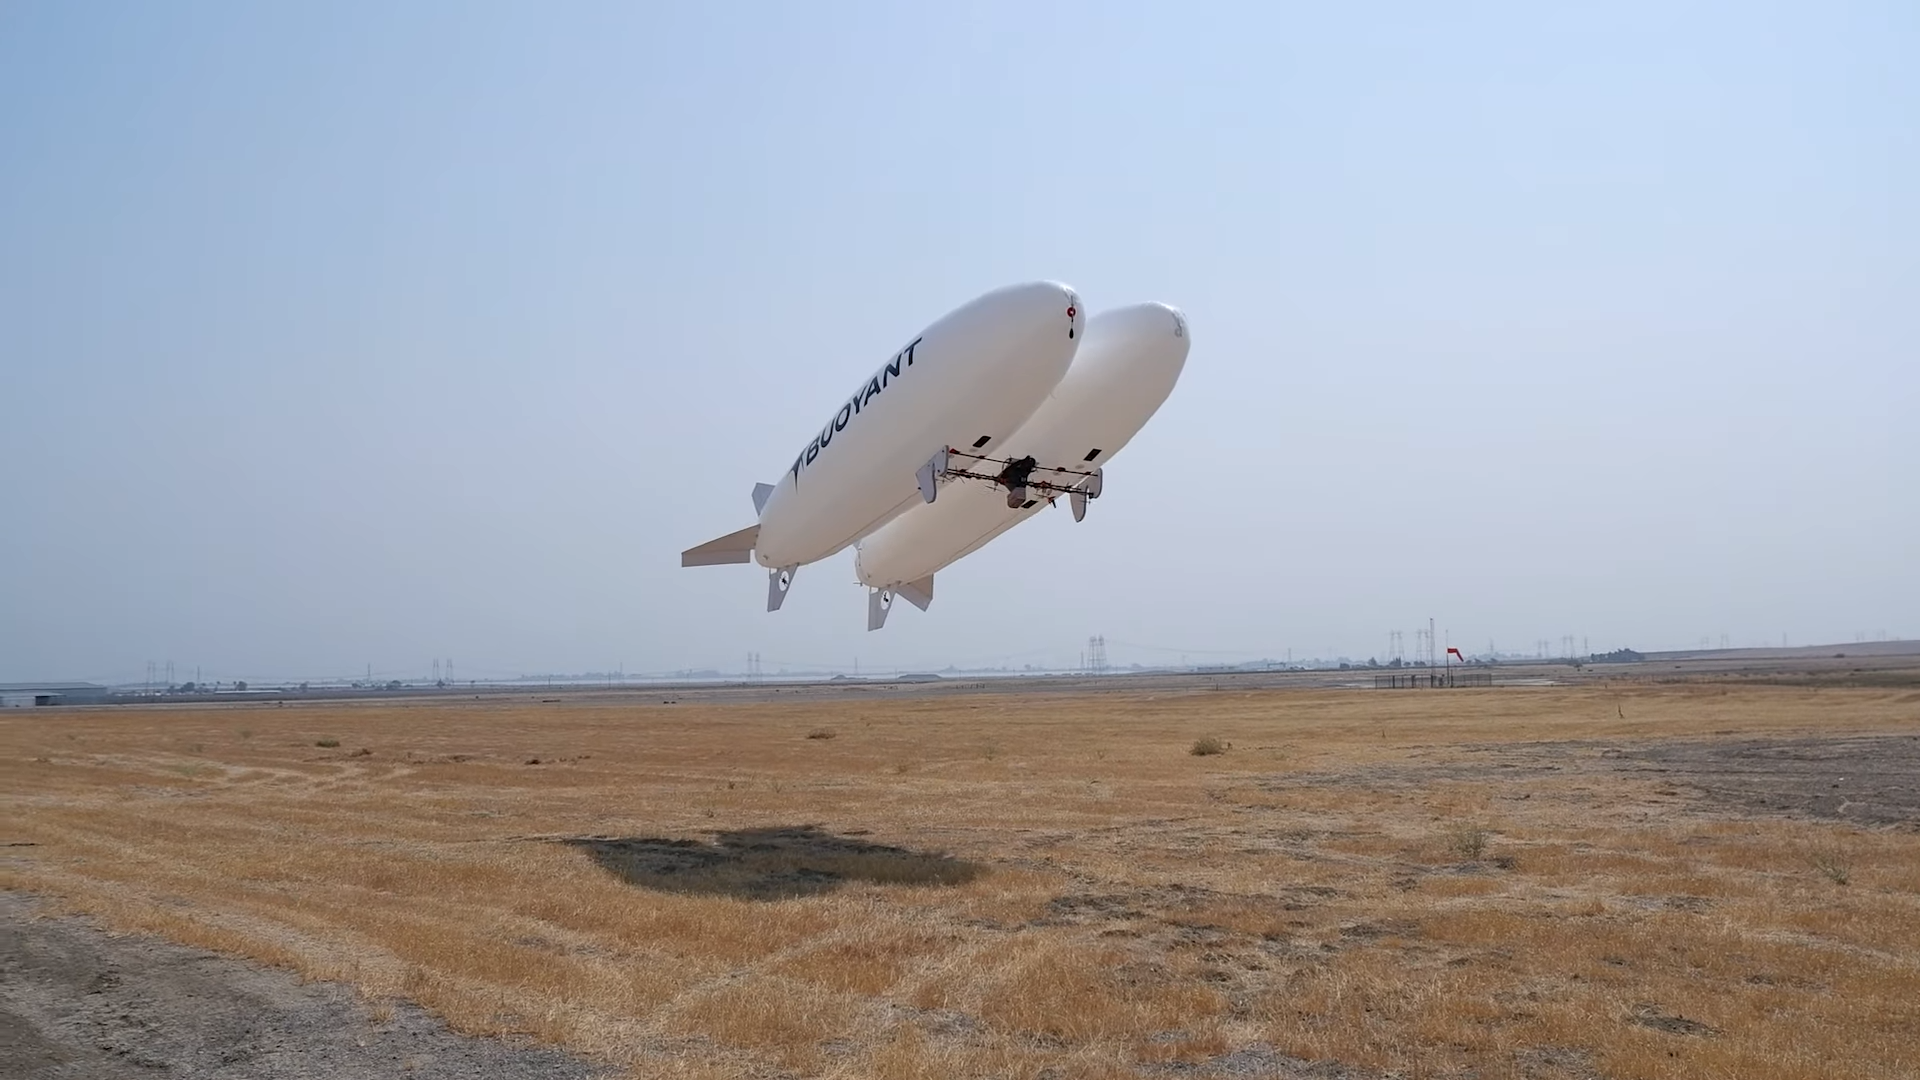 Big webcam zeppelins